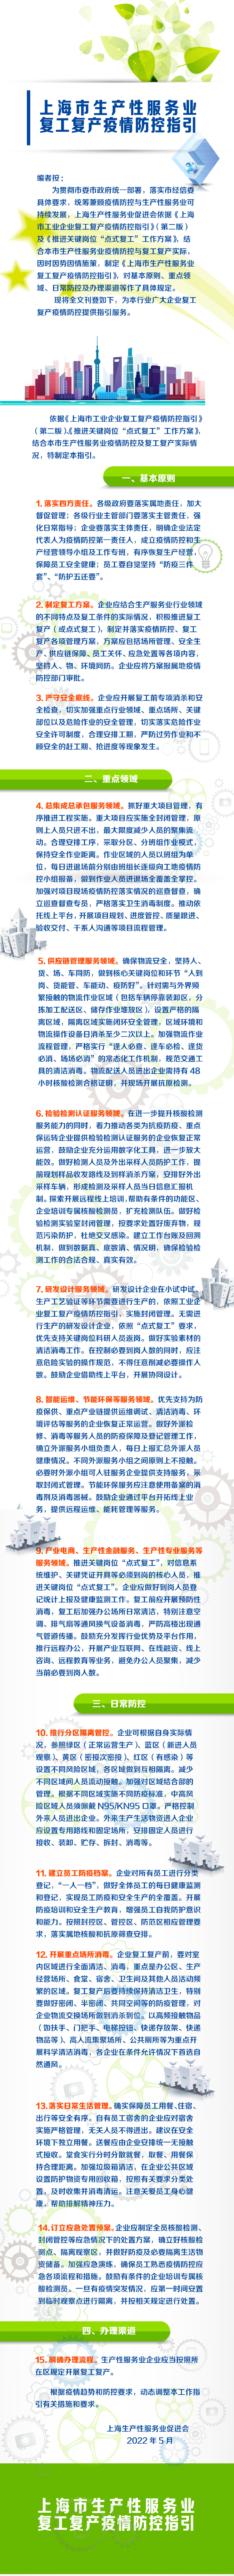 上海市生产性服务业复工复产疫情防控指引.png